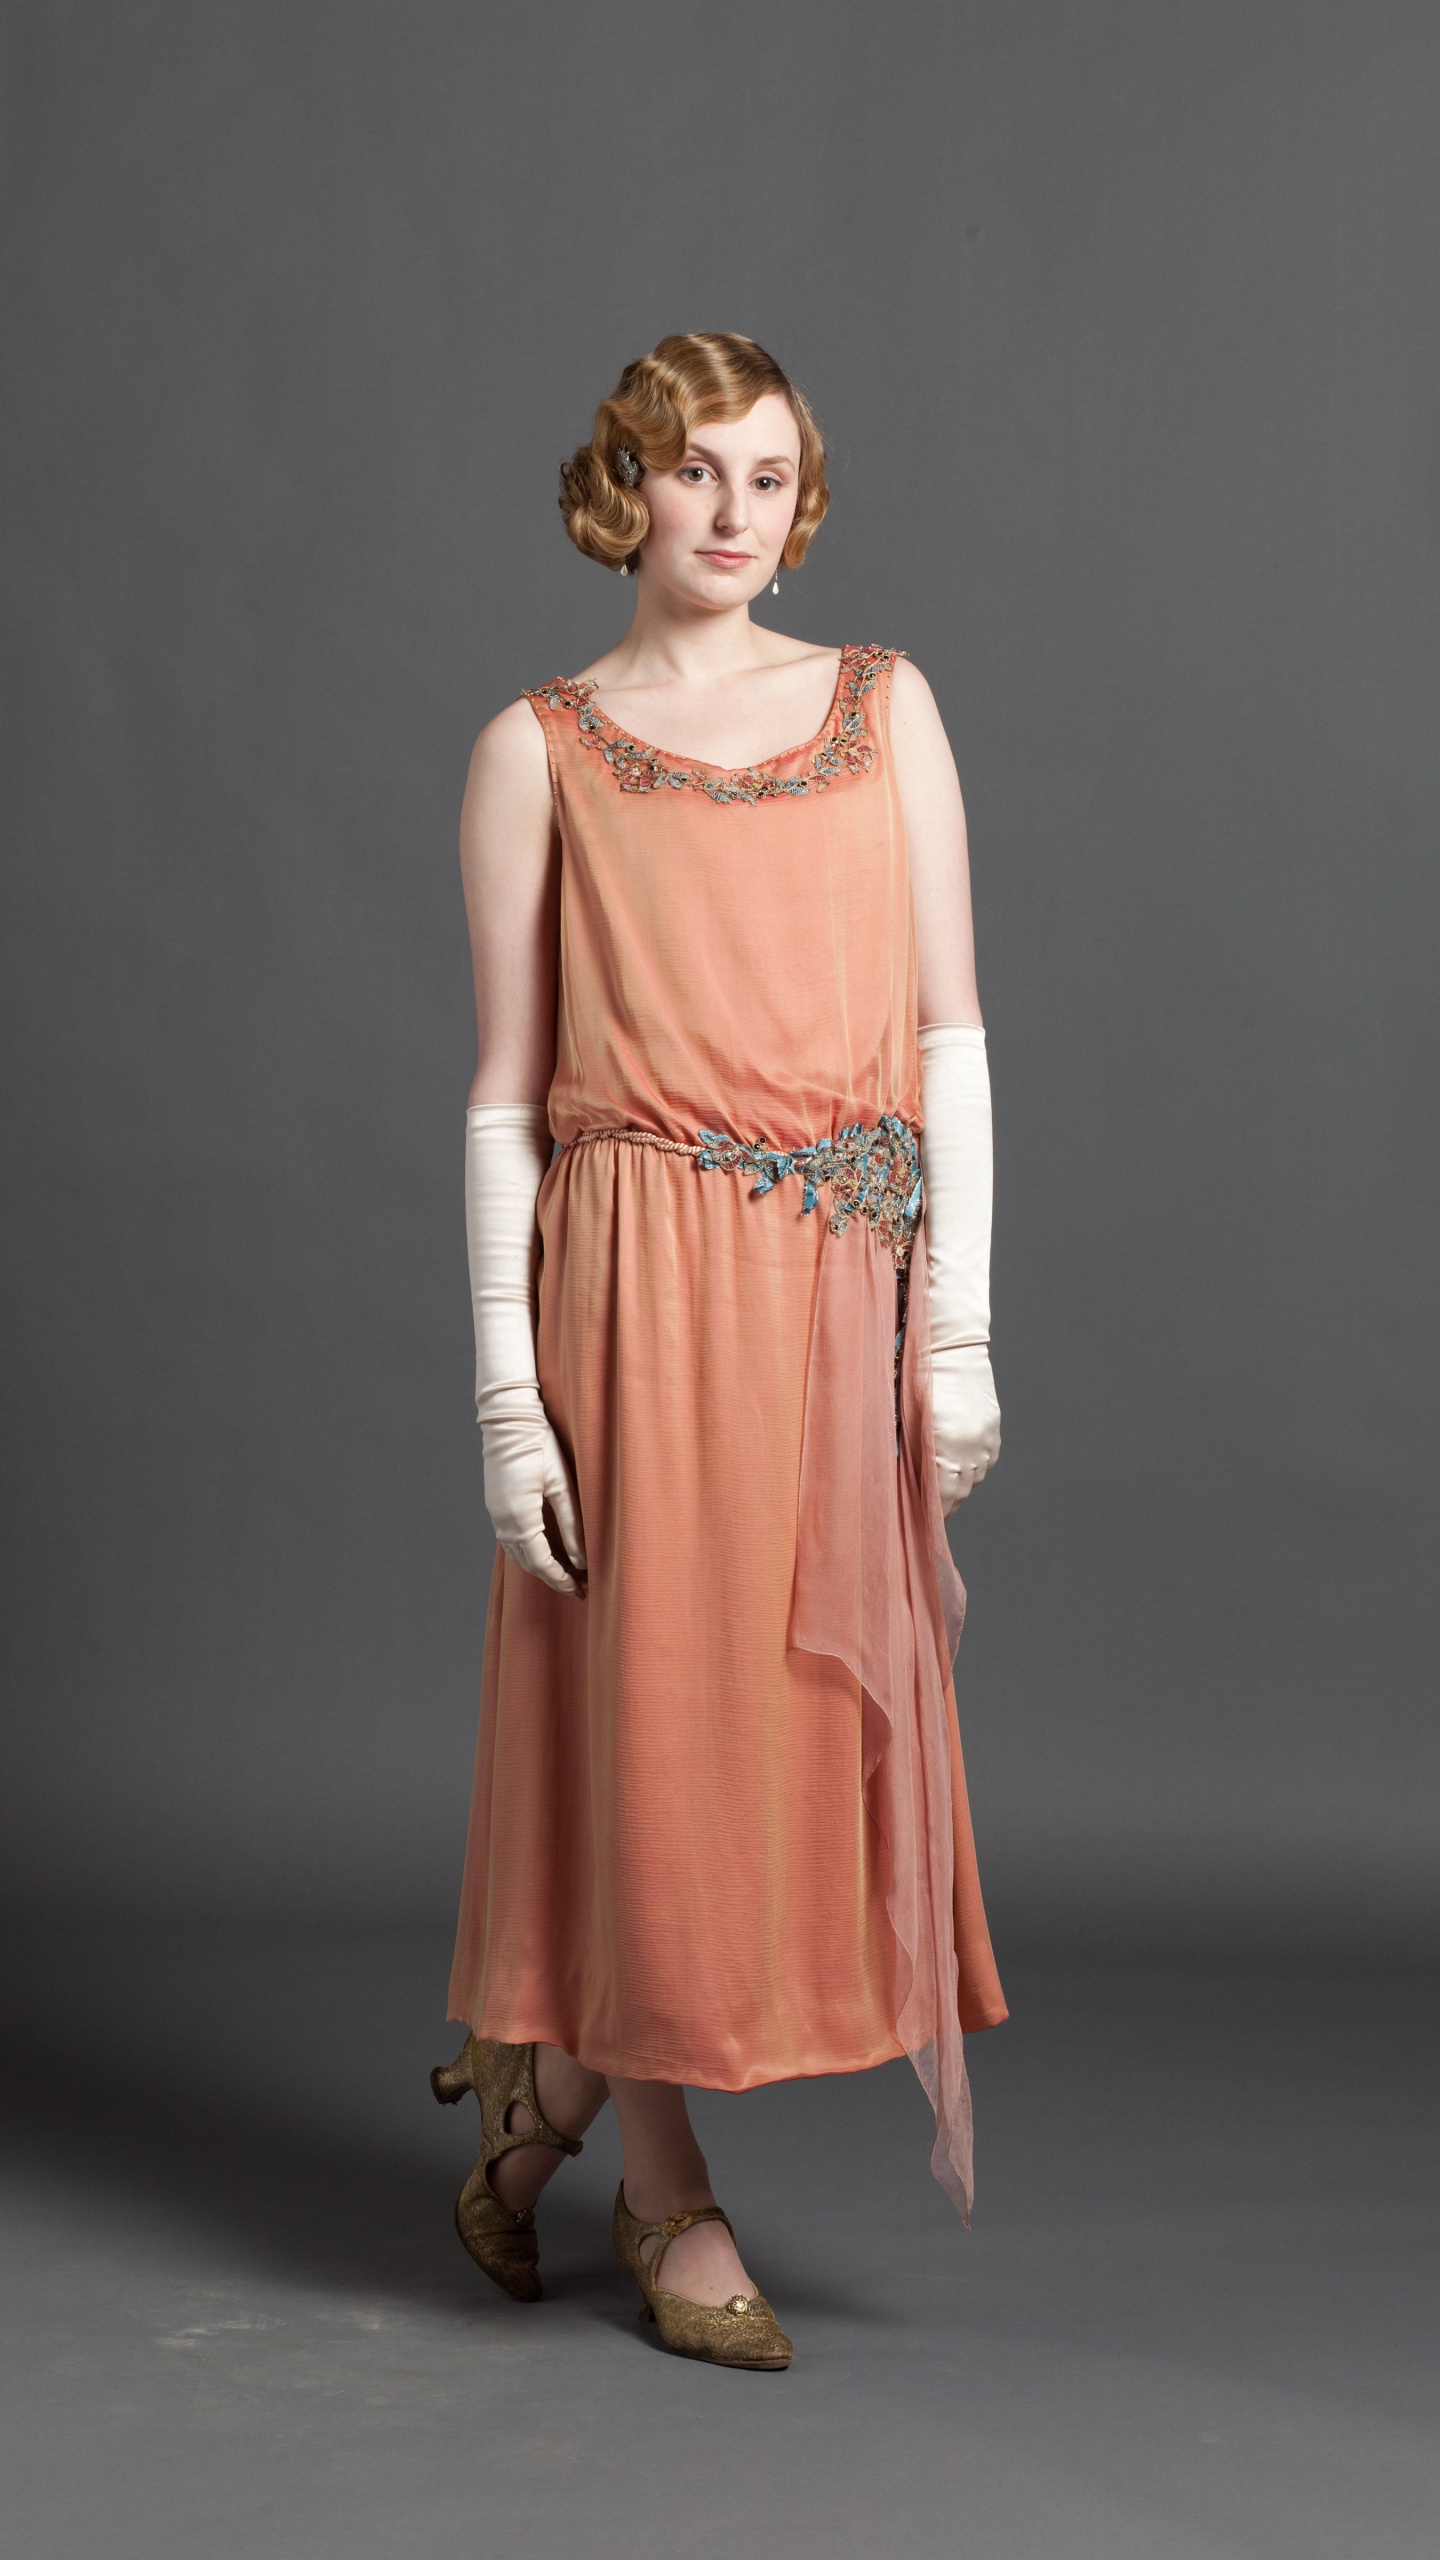 Laura Carmichael, Lady Edith Crawley, Downton Abbey, Dress, Clothing. Wallpaper in 1440x2560 Resolution